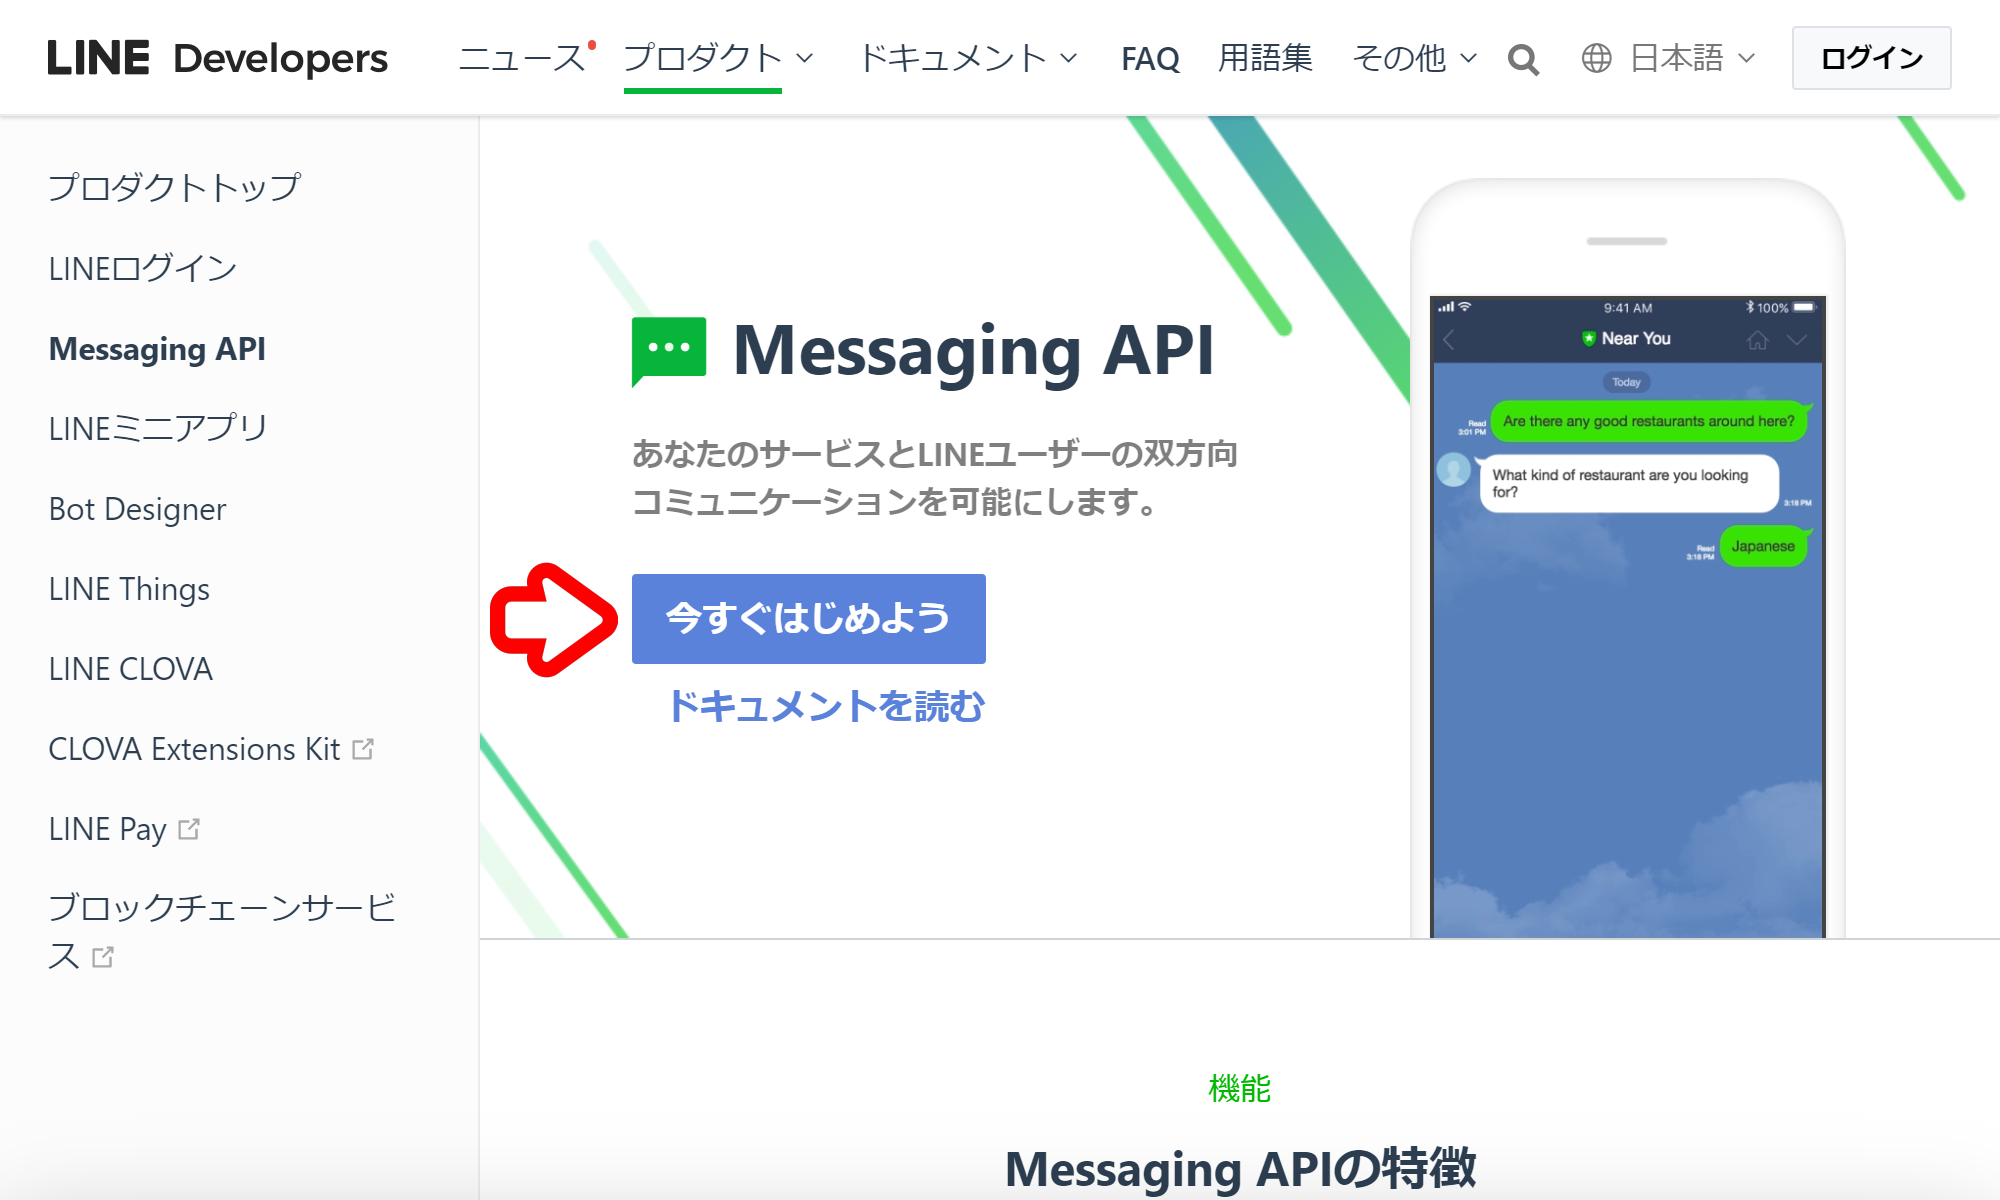 developers.line.biz_ja_services_messaging-api_2.png